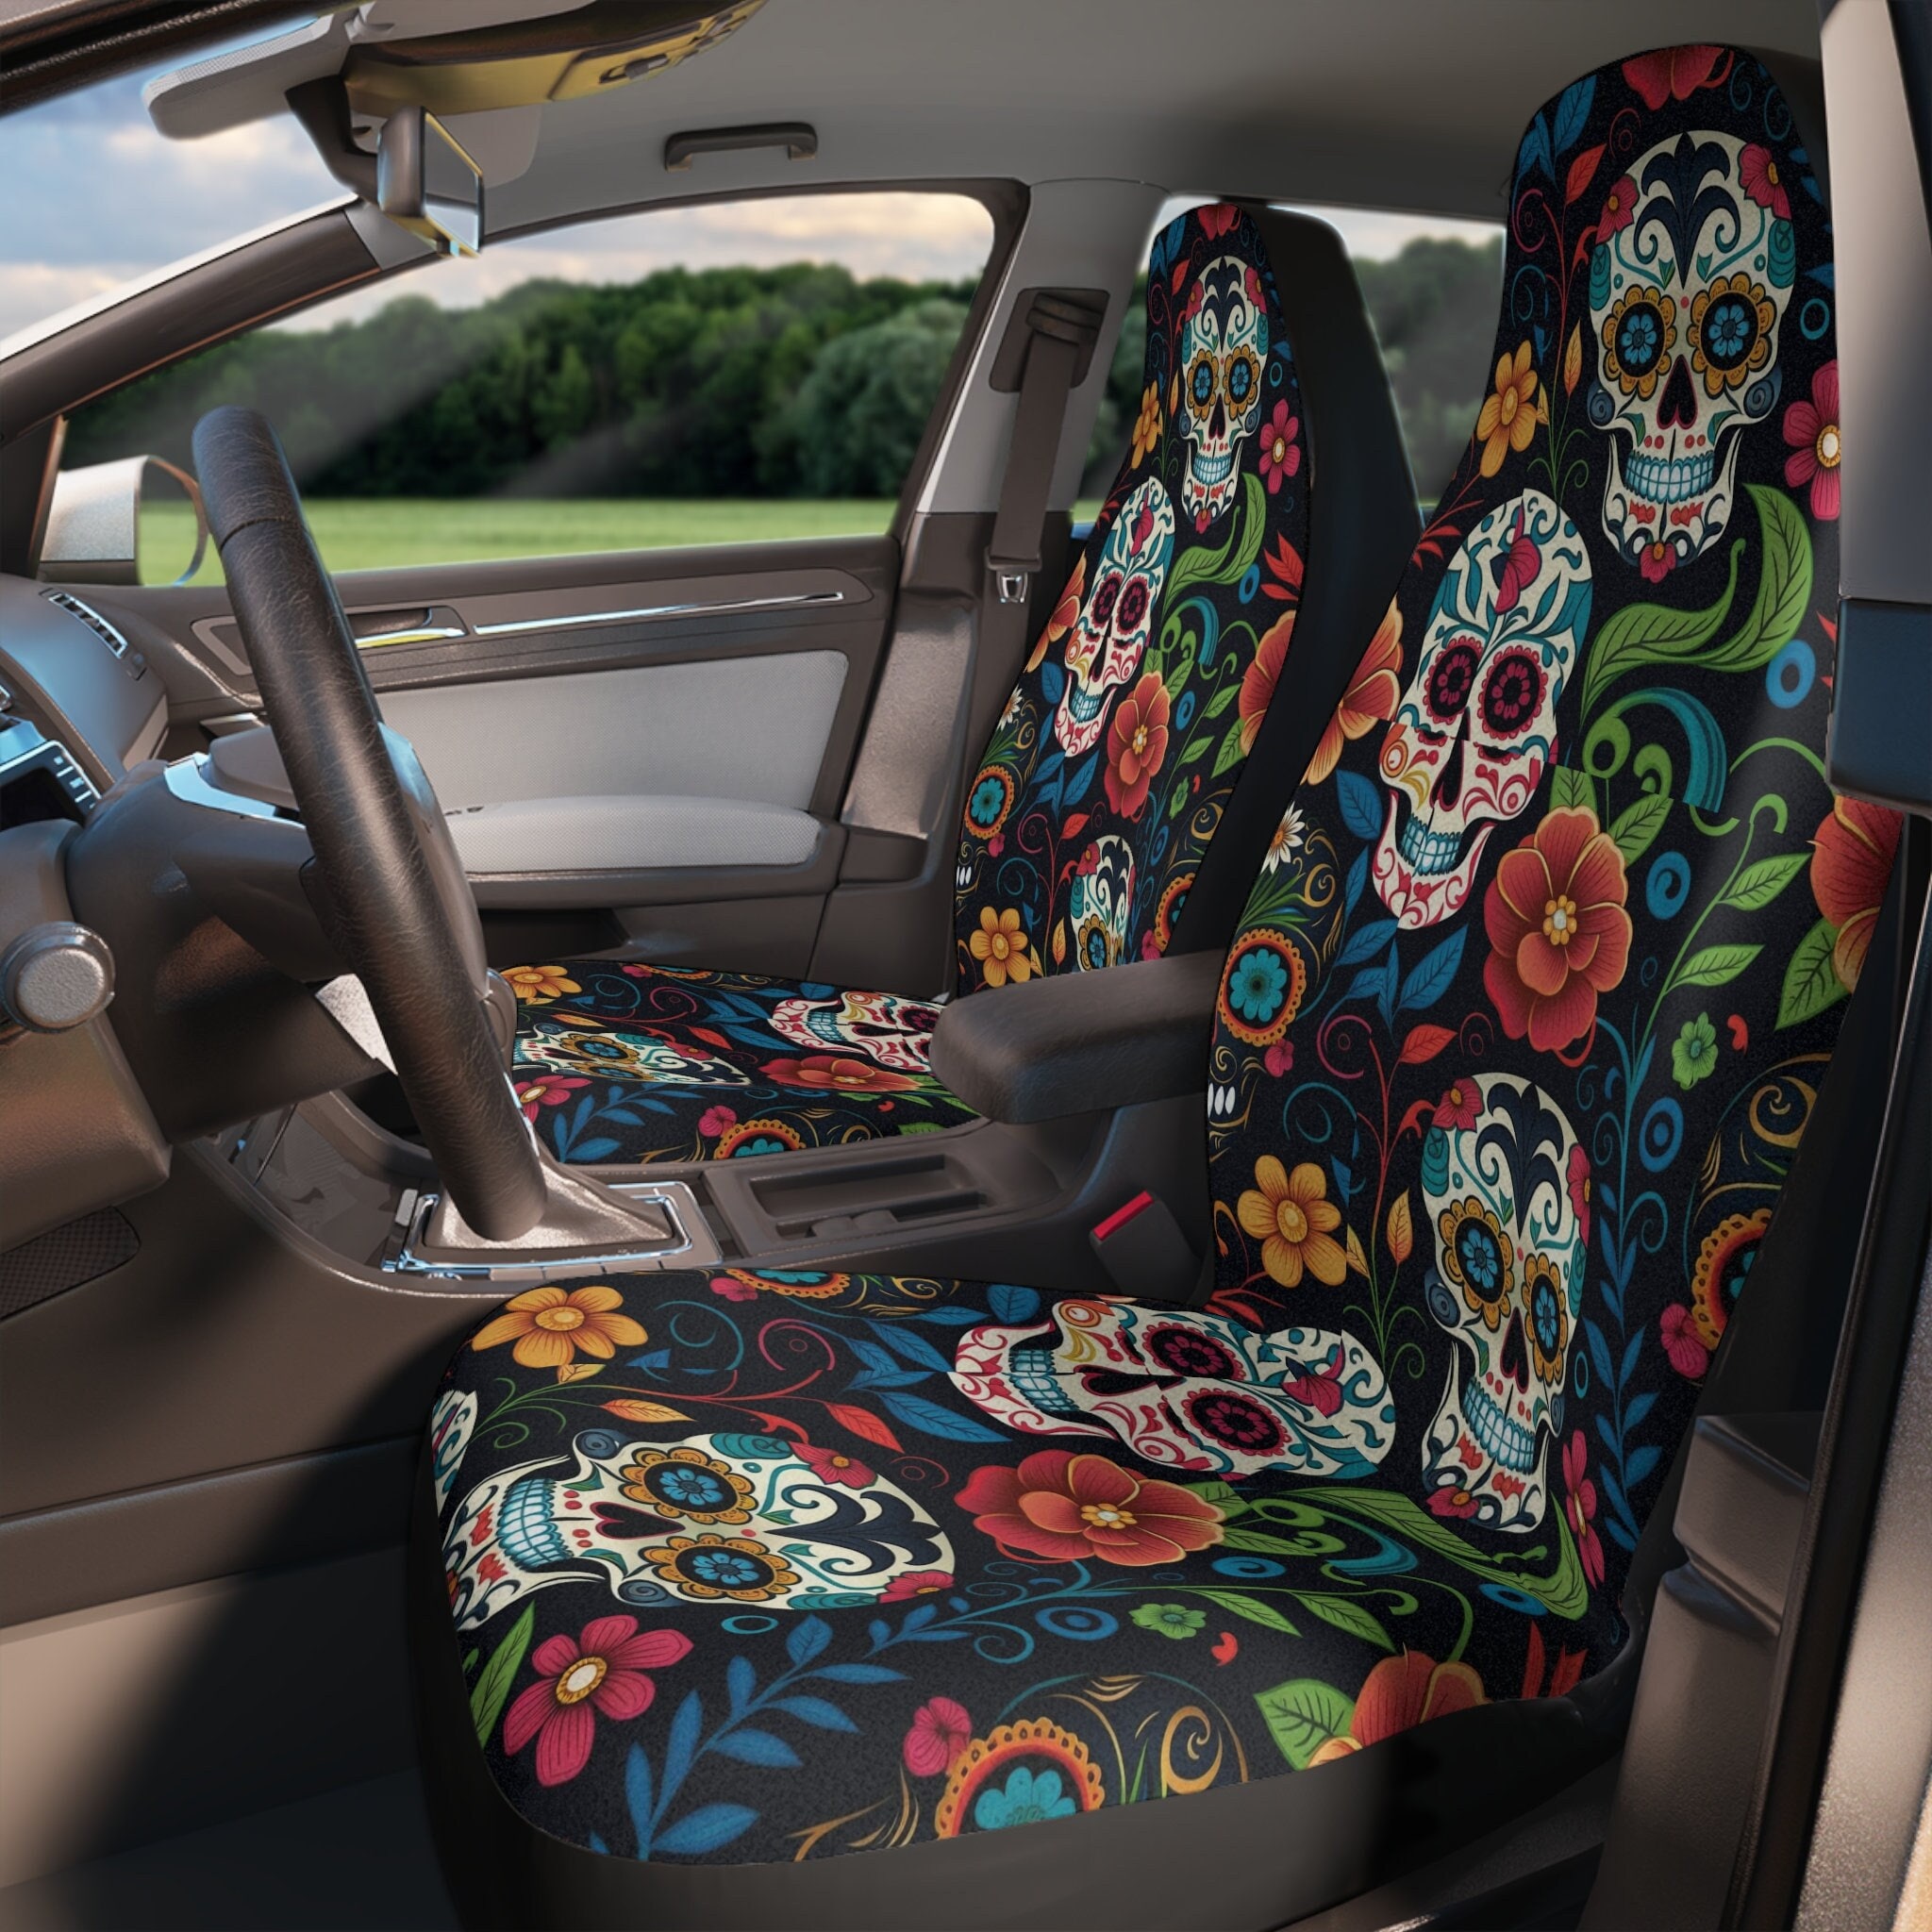 Auto RV Vorne Hinten Sitzauflage Sitzbezüge für Fahrer- / Beifahrersitz  Matte